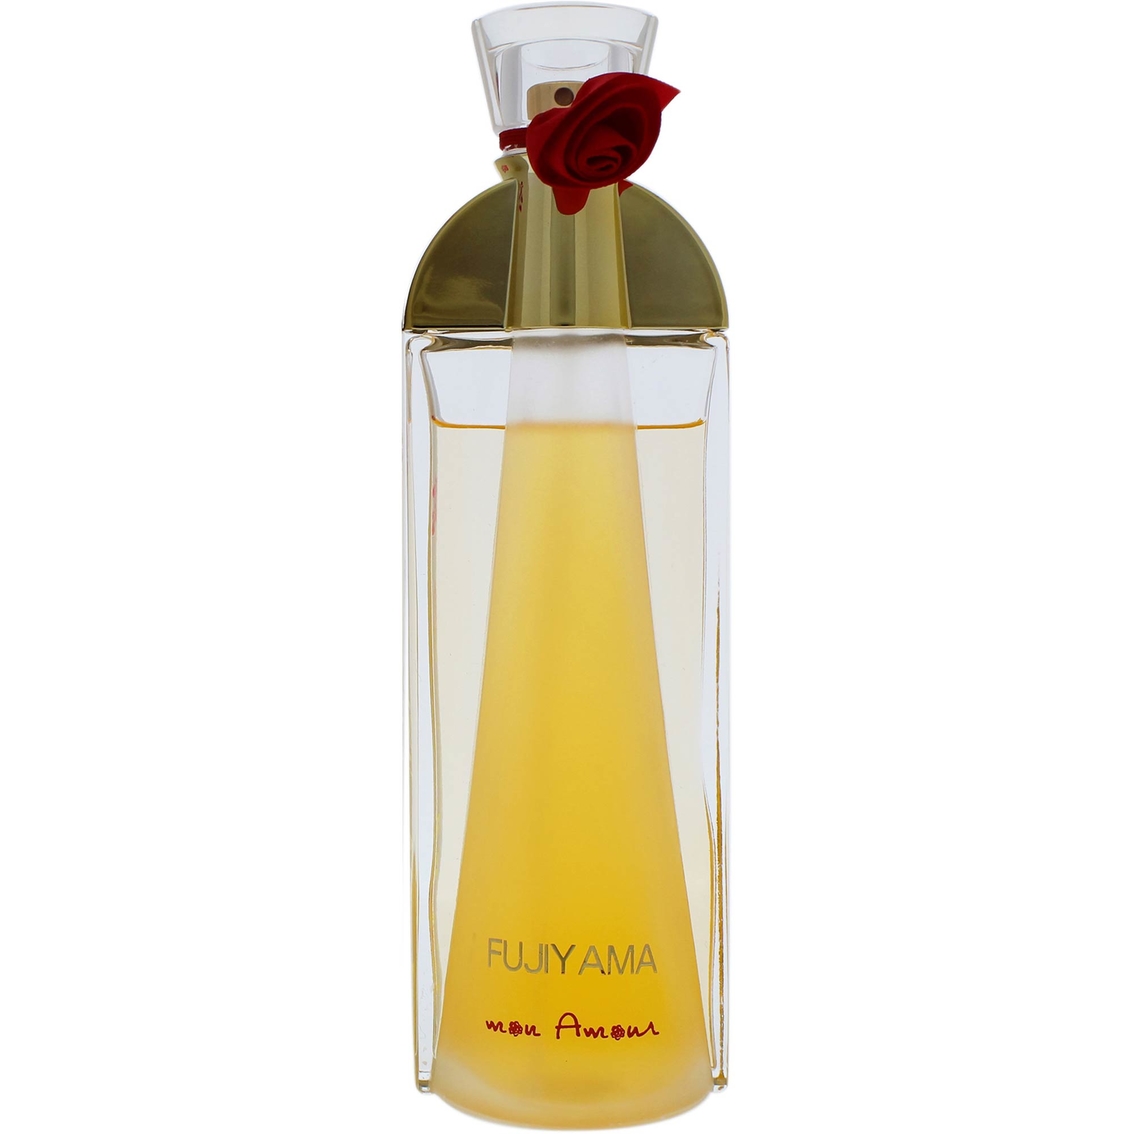 Succes De Paris Fujiyama Mon Amour for Women Eau de Parfum Spray - Image 1 of 2